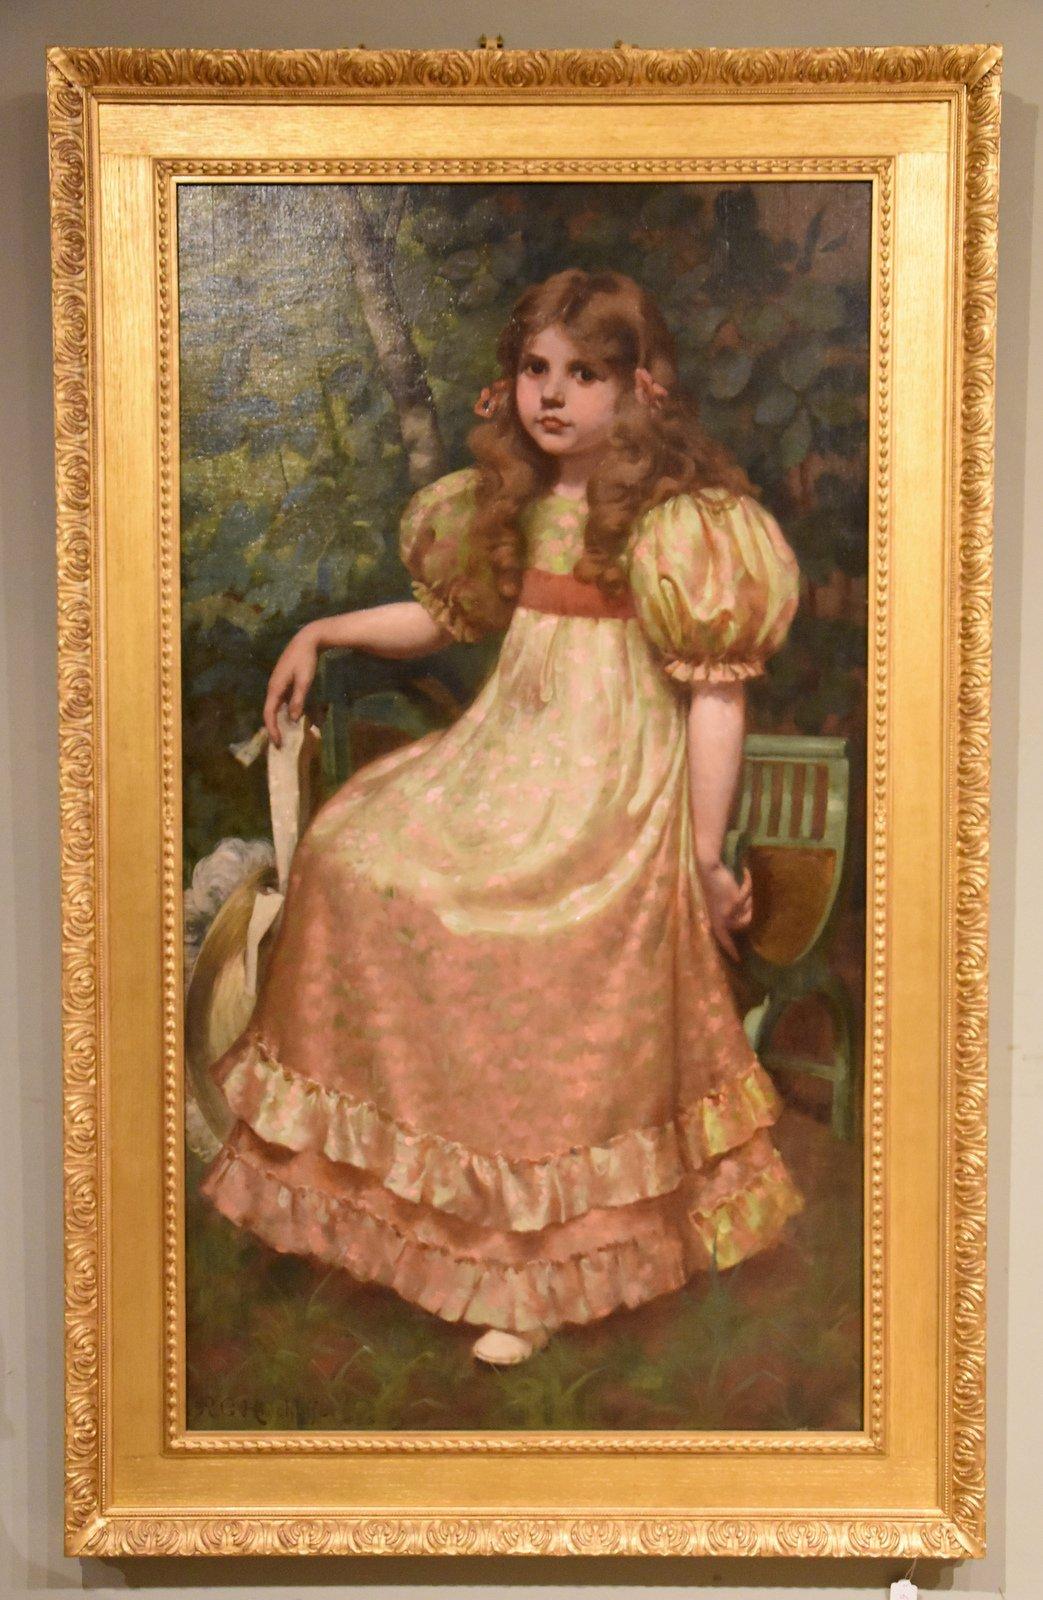 Ölgemälde von Richard George Hinchliffe "Porträt eines Mädchens" (1868-1942)

Abmessungen
Breite 39,25" (100cm)
Höhe 63,75" (162cm)

Alle Artikel, die wir zum Verkauf anbieten, wurden so genau wie möglich beschrieben und befinden sich in